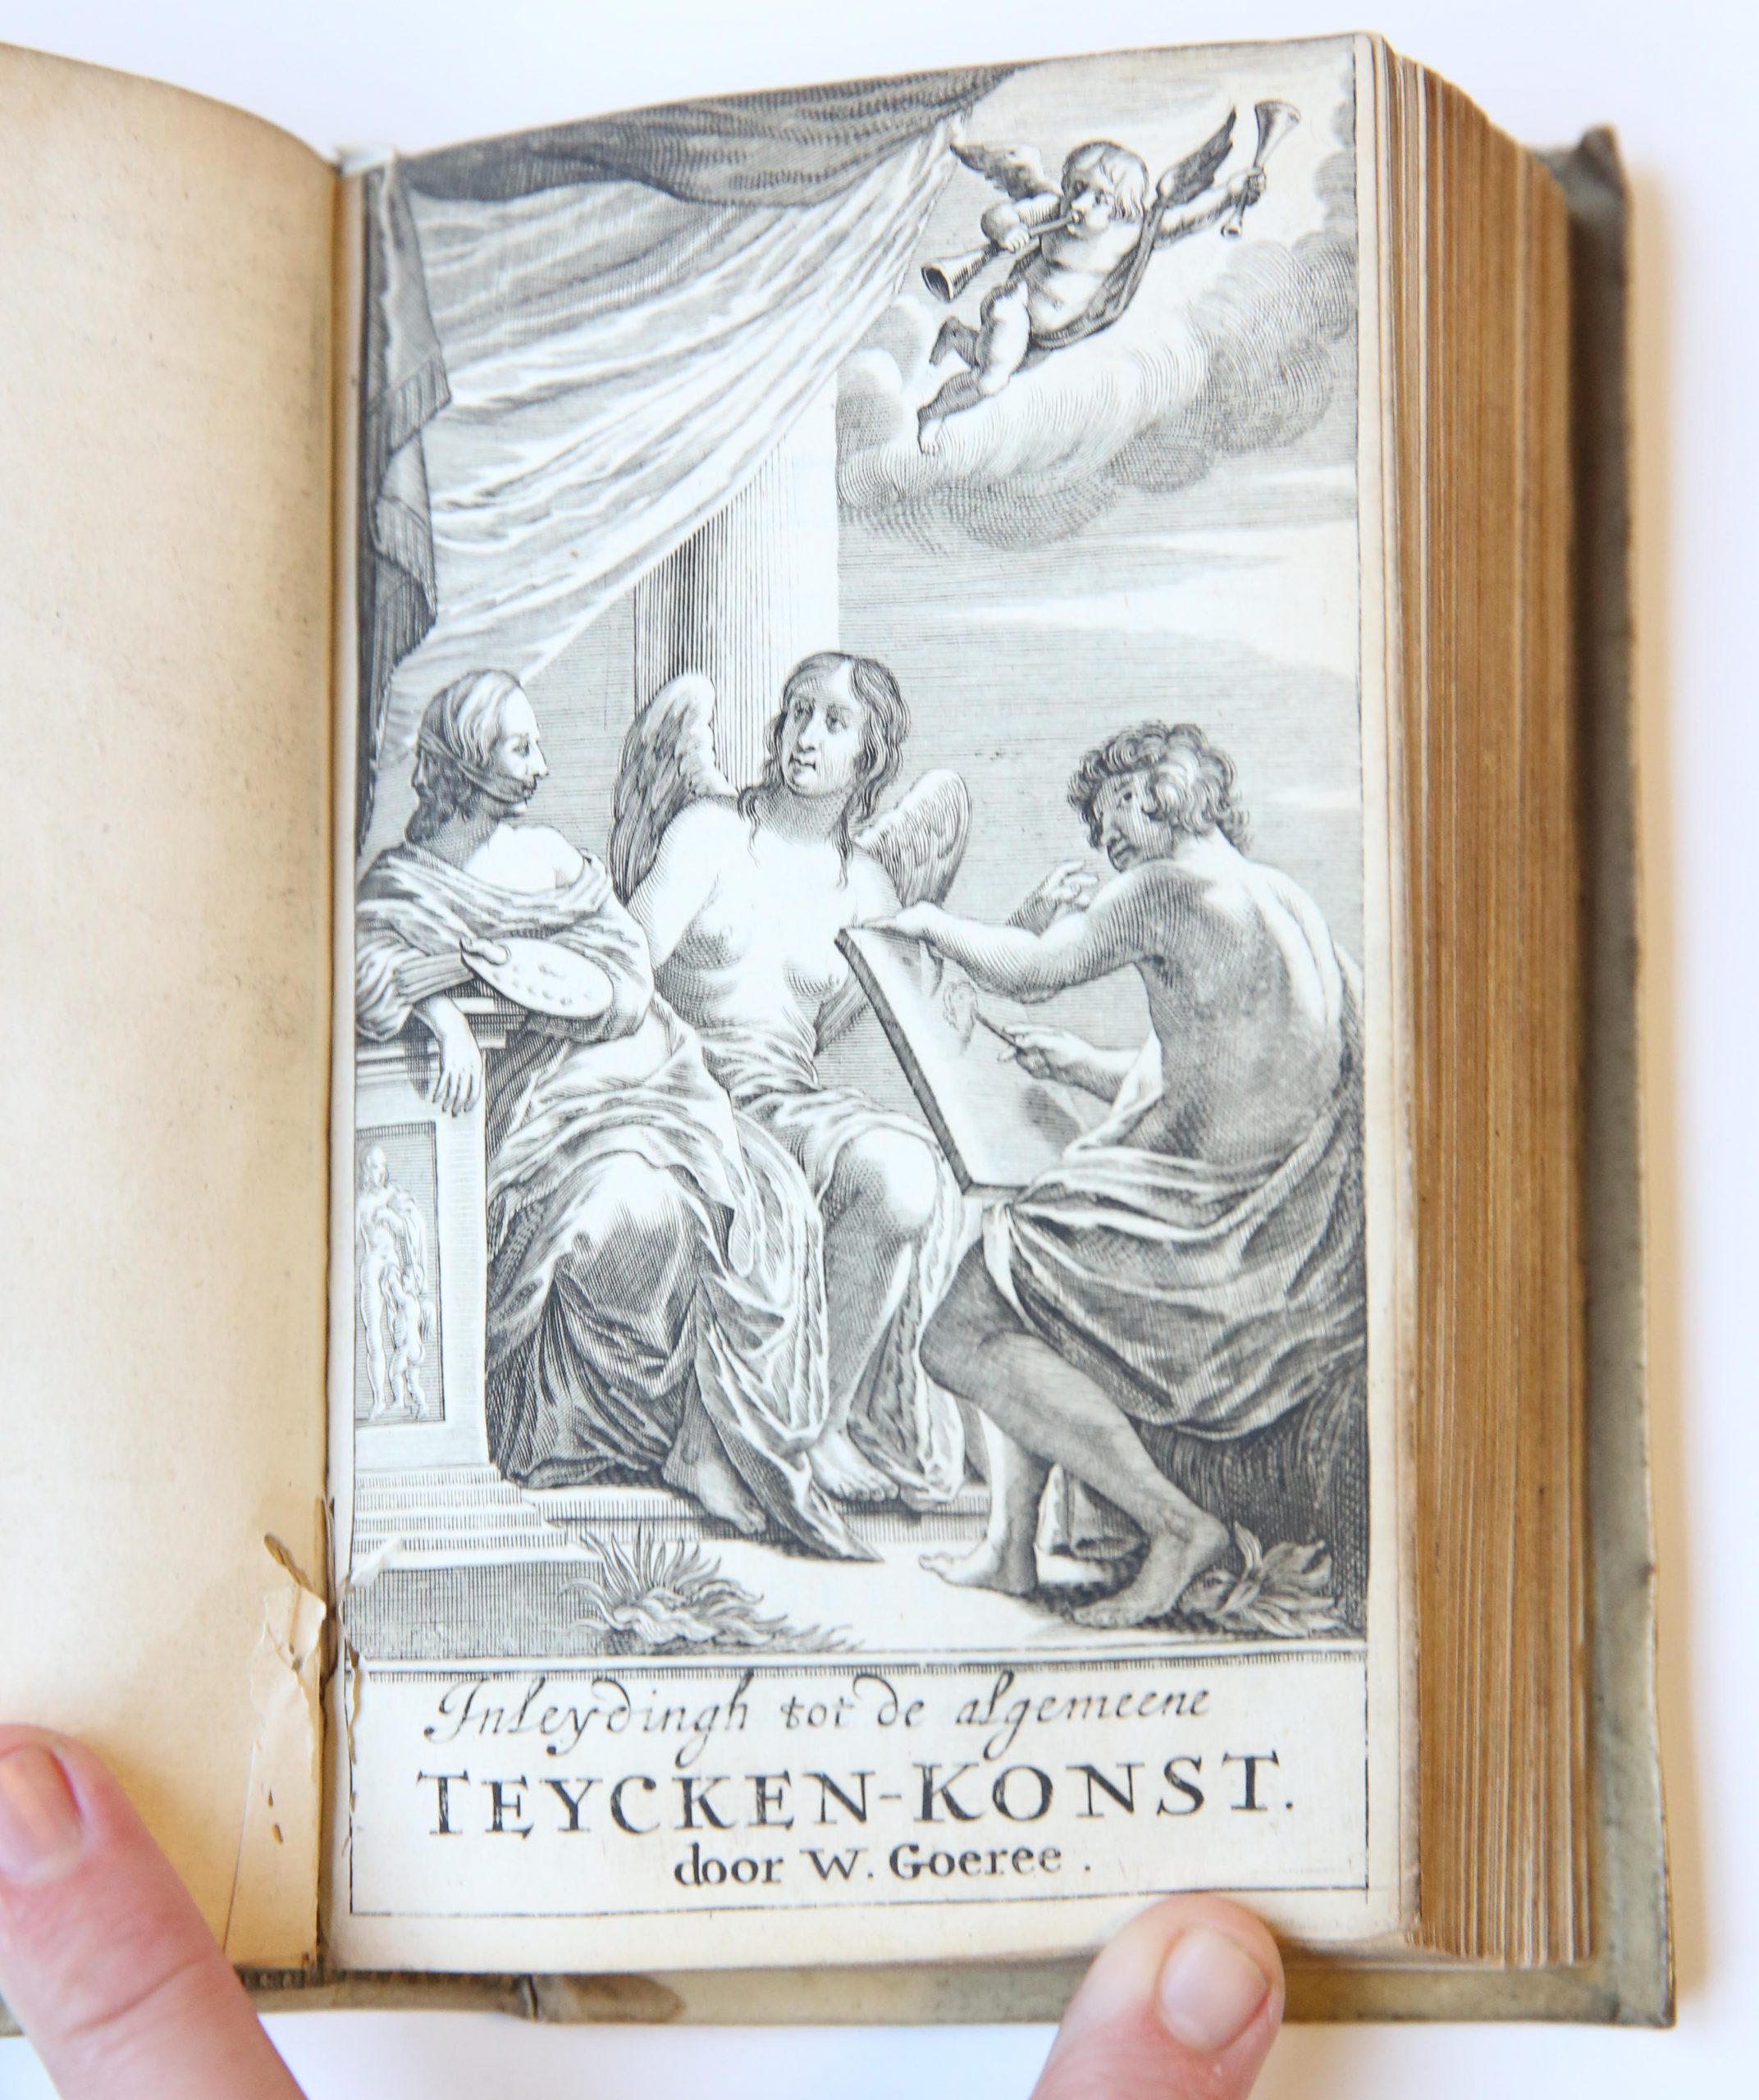 [1] Inleydingh tot de practijck der al-gemeene schilder-konst (...) dienende tot een voorlooper van een ander werck. Middelburg, W. Goeree, 1670. [Gebonden met:] [2] Inleydinge tot de al-gemeene teycken-konst. 2e druk, Middelburg, Goeree, 1670. [En met:] [3] Verlichterie-kunde of recht gebruyck der water-verwen (...) eertijts uytgegeven door (...) G. ter Brugge. 2e druk, Middelburg, W. Goeree, 1670.